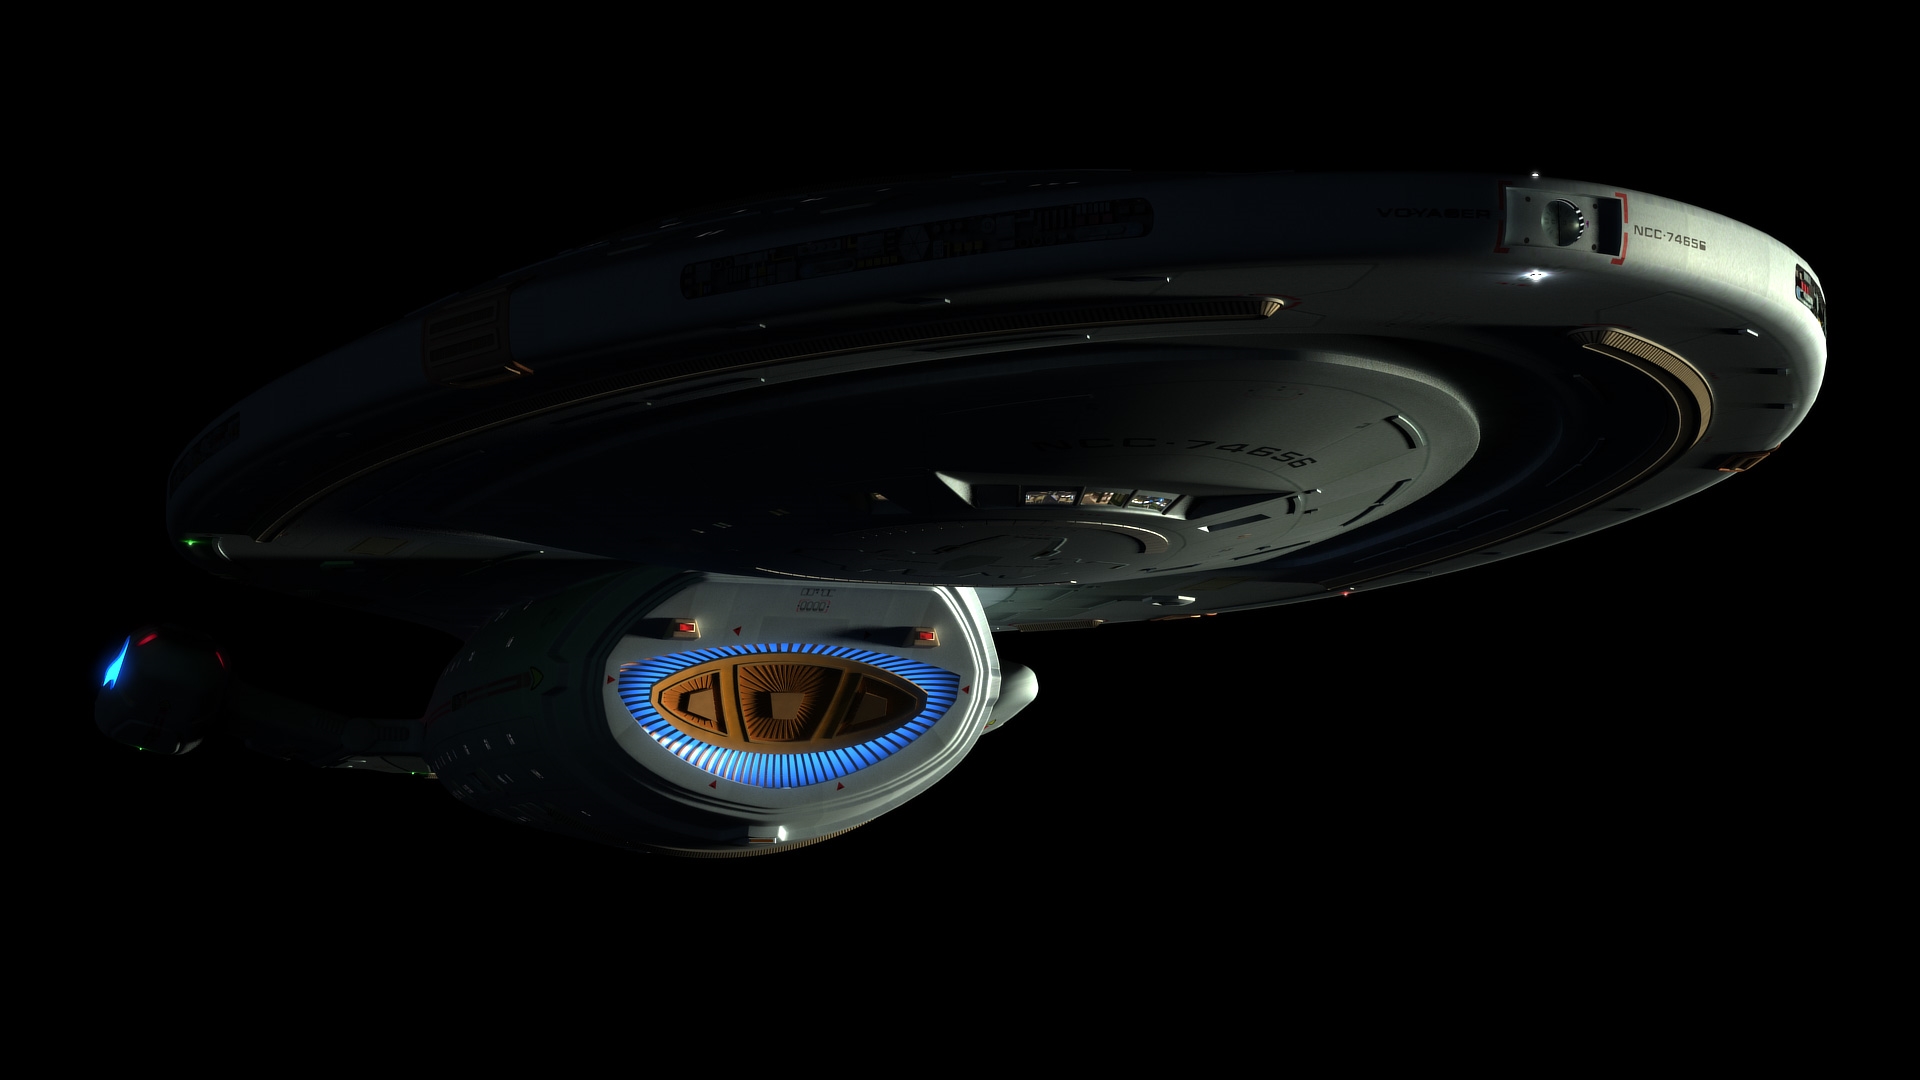 TV Show Star Trek Voyager 1920x1080